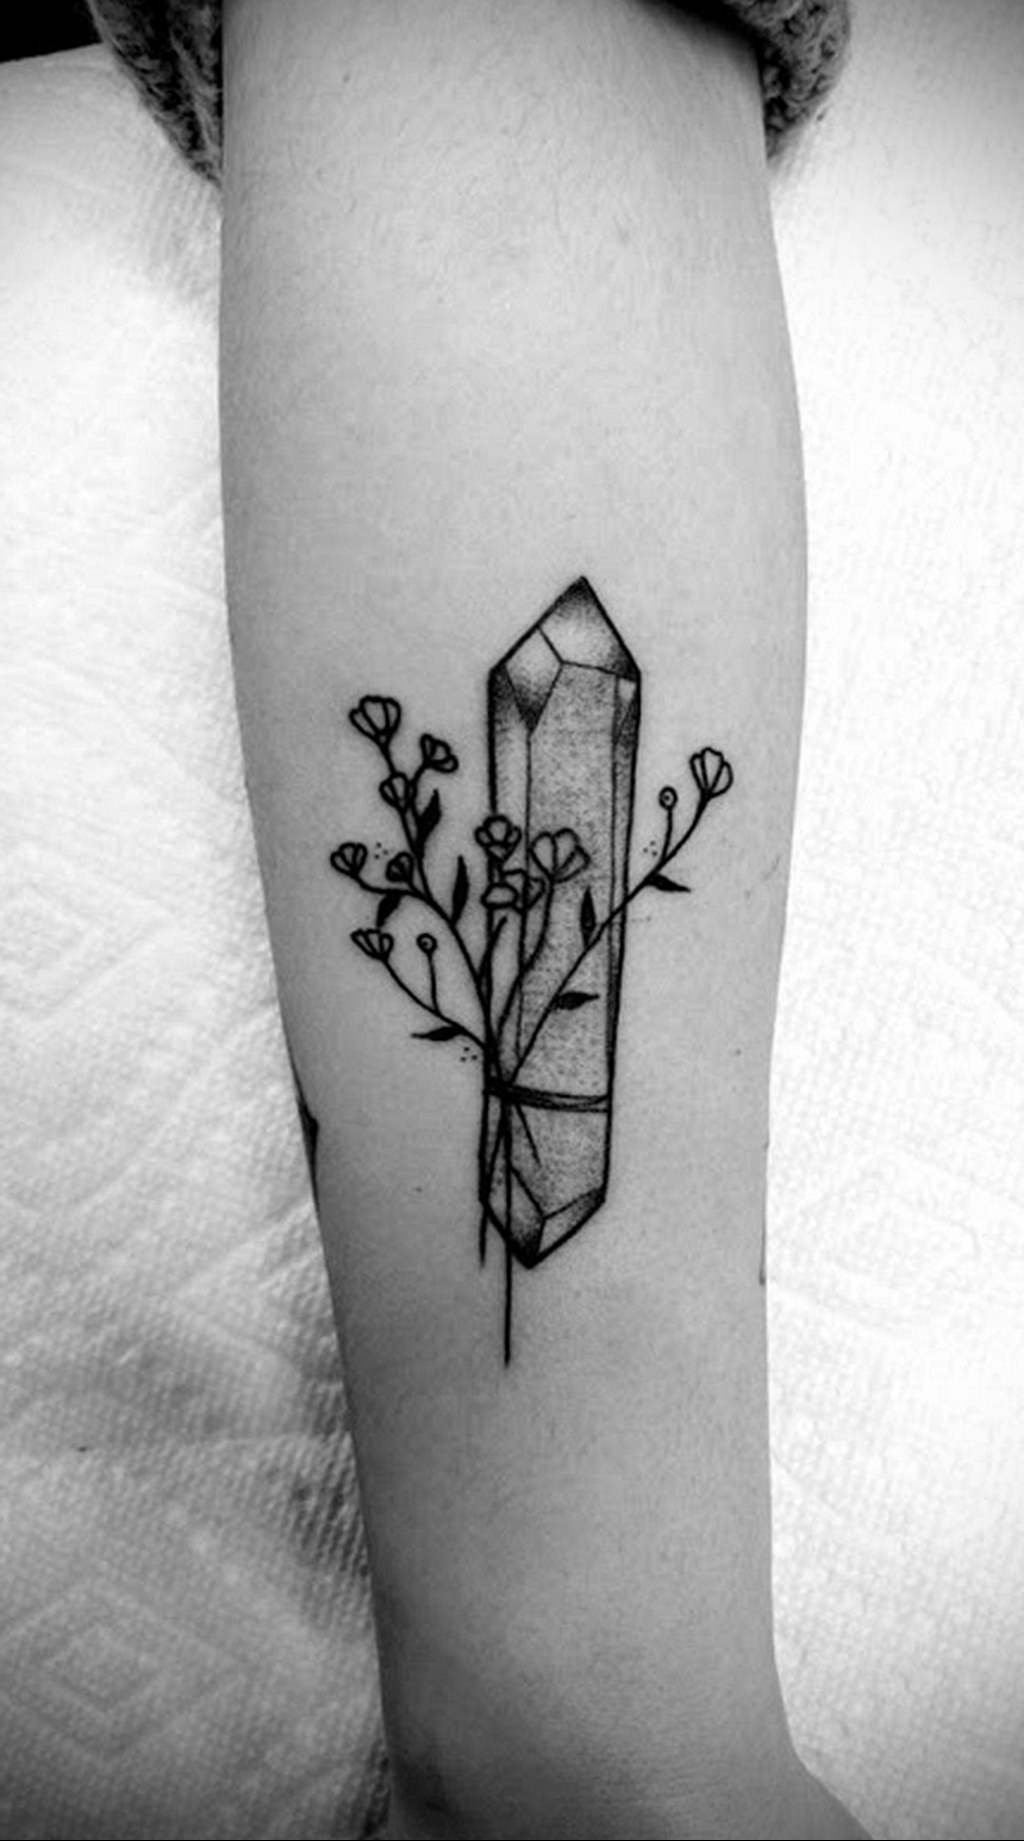 Pin by Sonia Kowacka on Line work tattoo designs annatattoos  Crystal  drawing Crystal tattoo Tattoo flash art